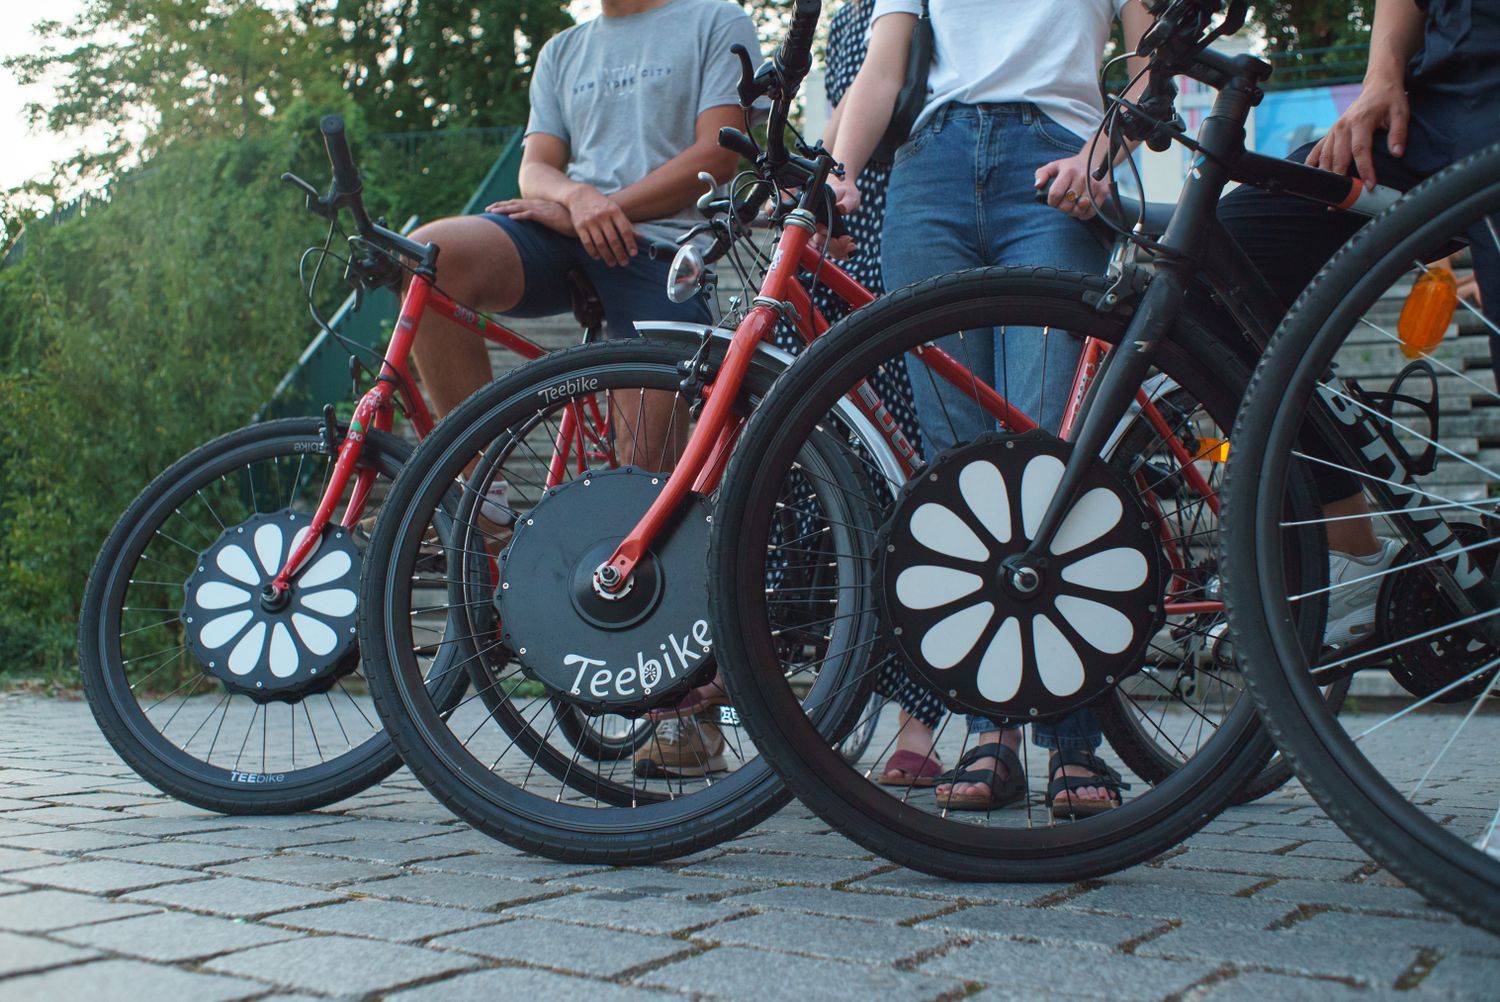 Des vélos transformés en électriques grâce à la roue Teebike.